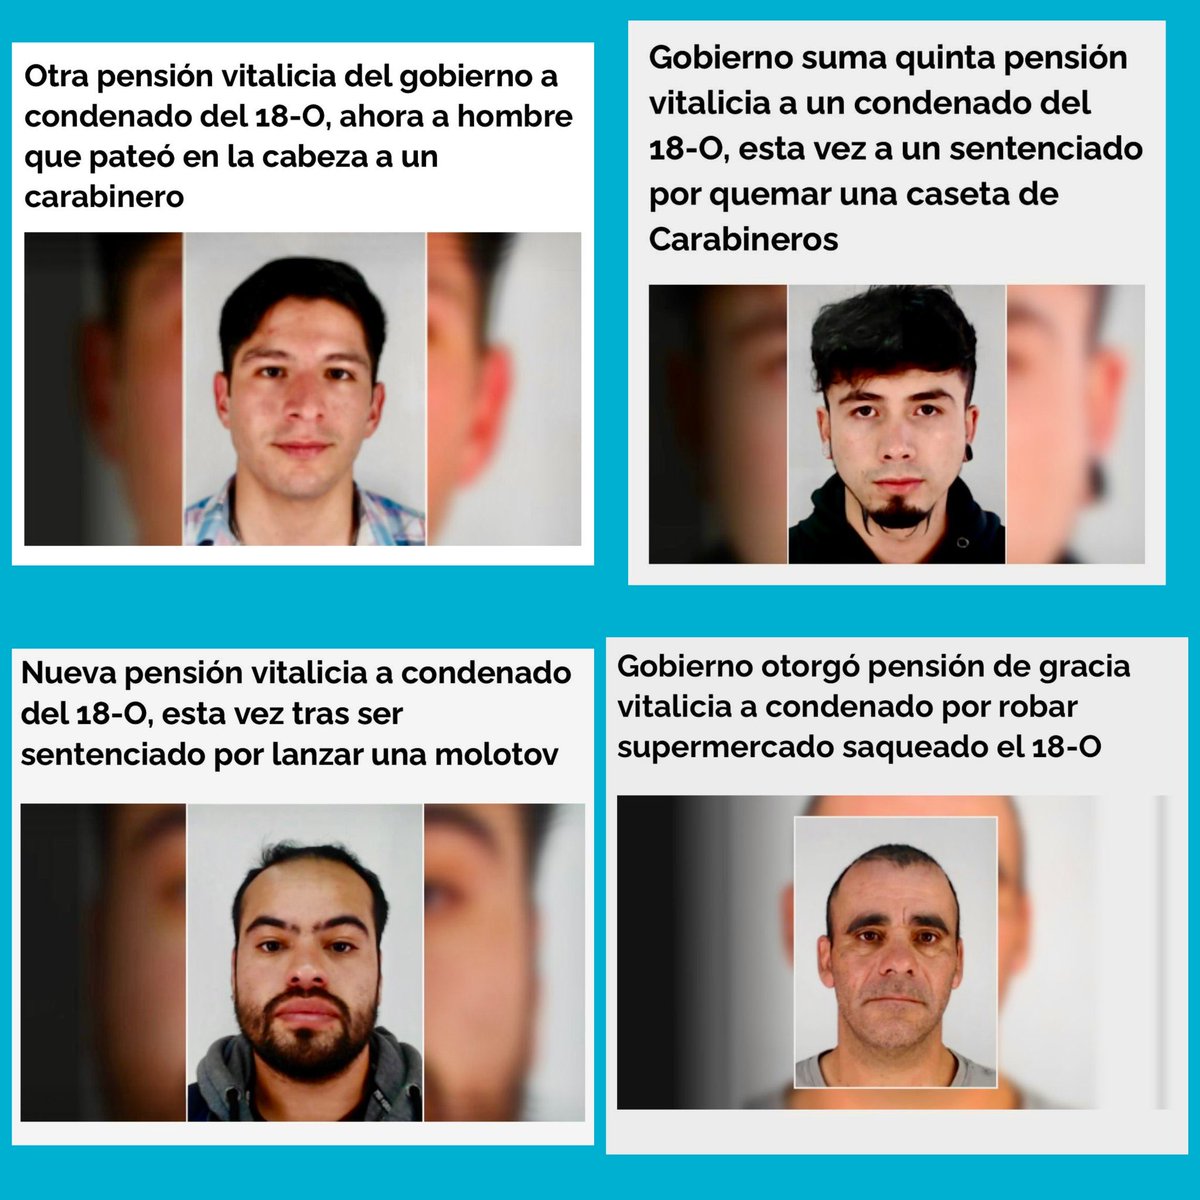 Estos son algunos de los delincuentes PREMIADOS por @GabrielBoric con Indultos y Pensiones de Gracia Vitalicias. Sea Ud delincuente y Boric le dará un ingreso de por vida con la plata de todos los chilenos !